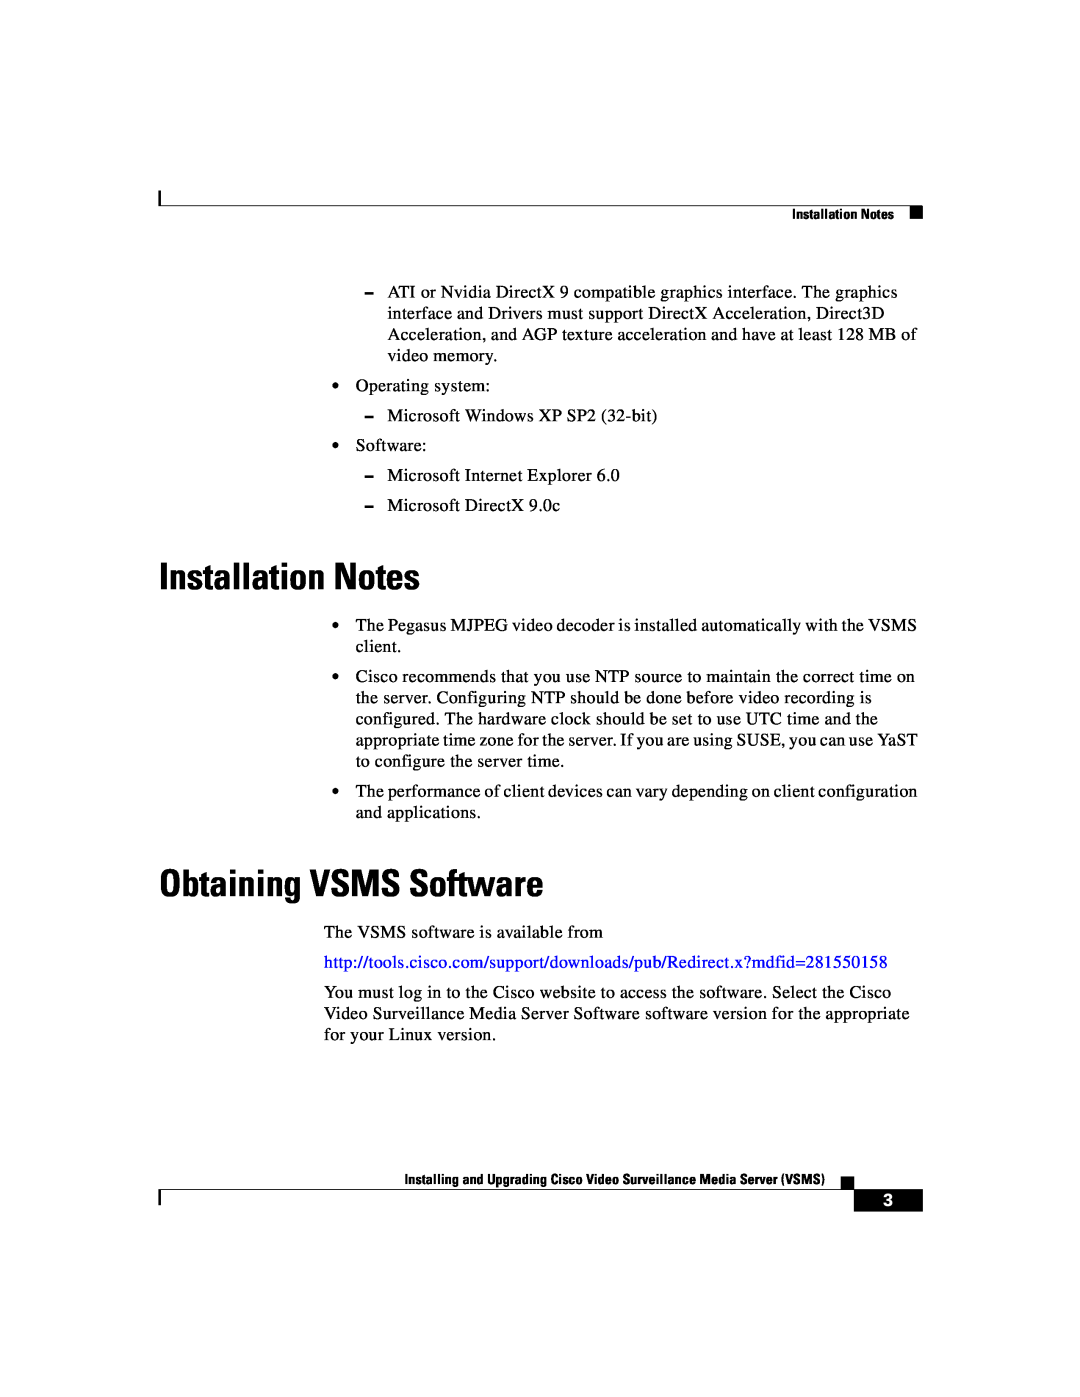 Cisco Systems Surveillance Media Server manual Installation Notes, Obtaining VSMS Software 